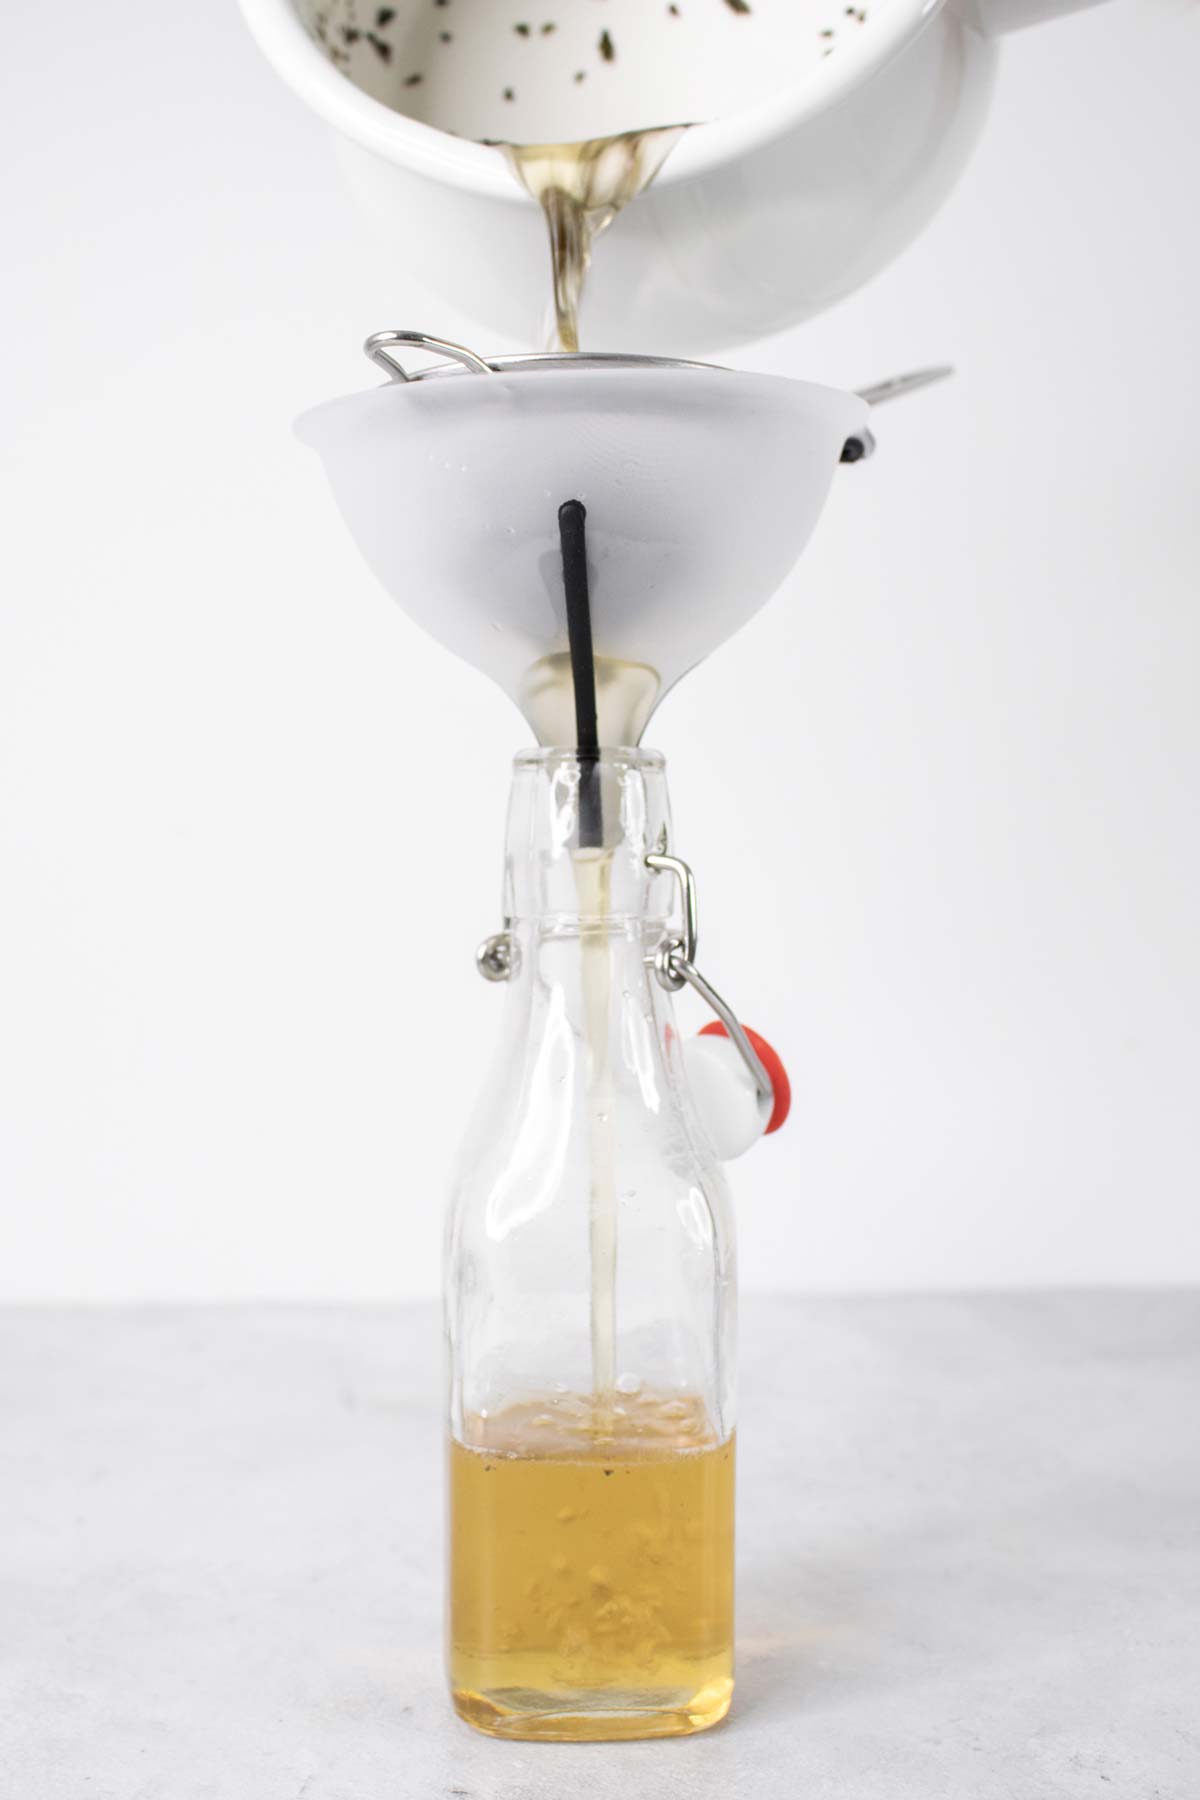 Munt eenvoudige siroop in een glazen fles uit een pan gieten.